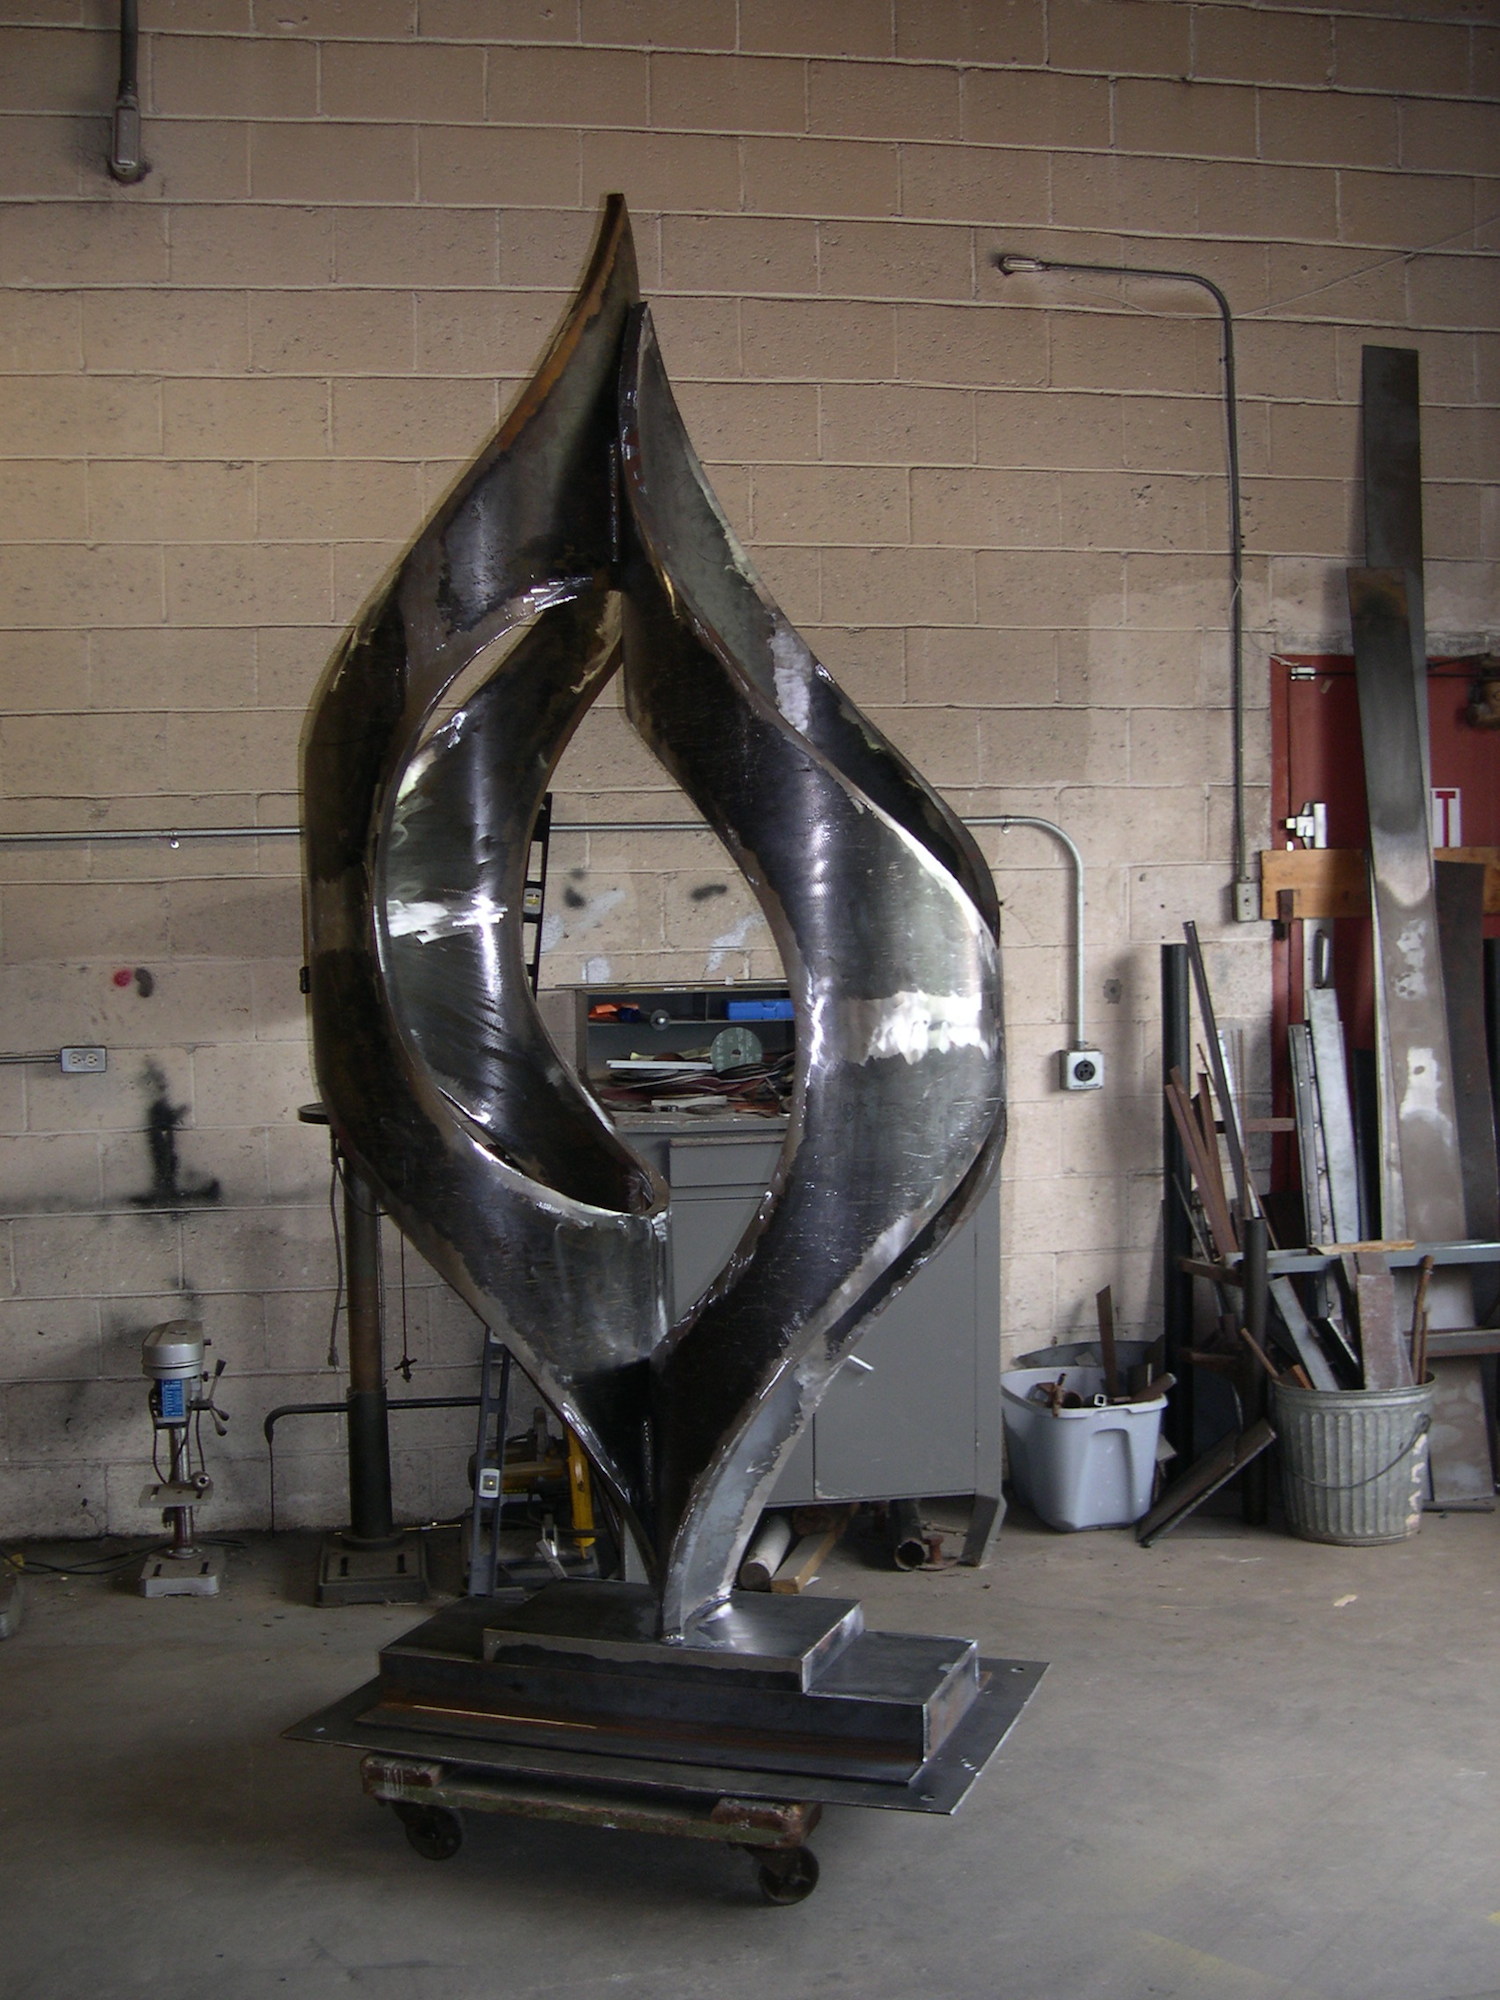 Welded Steel Sculpture